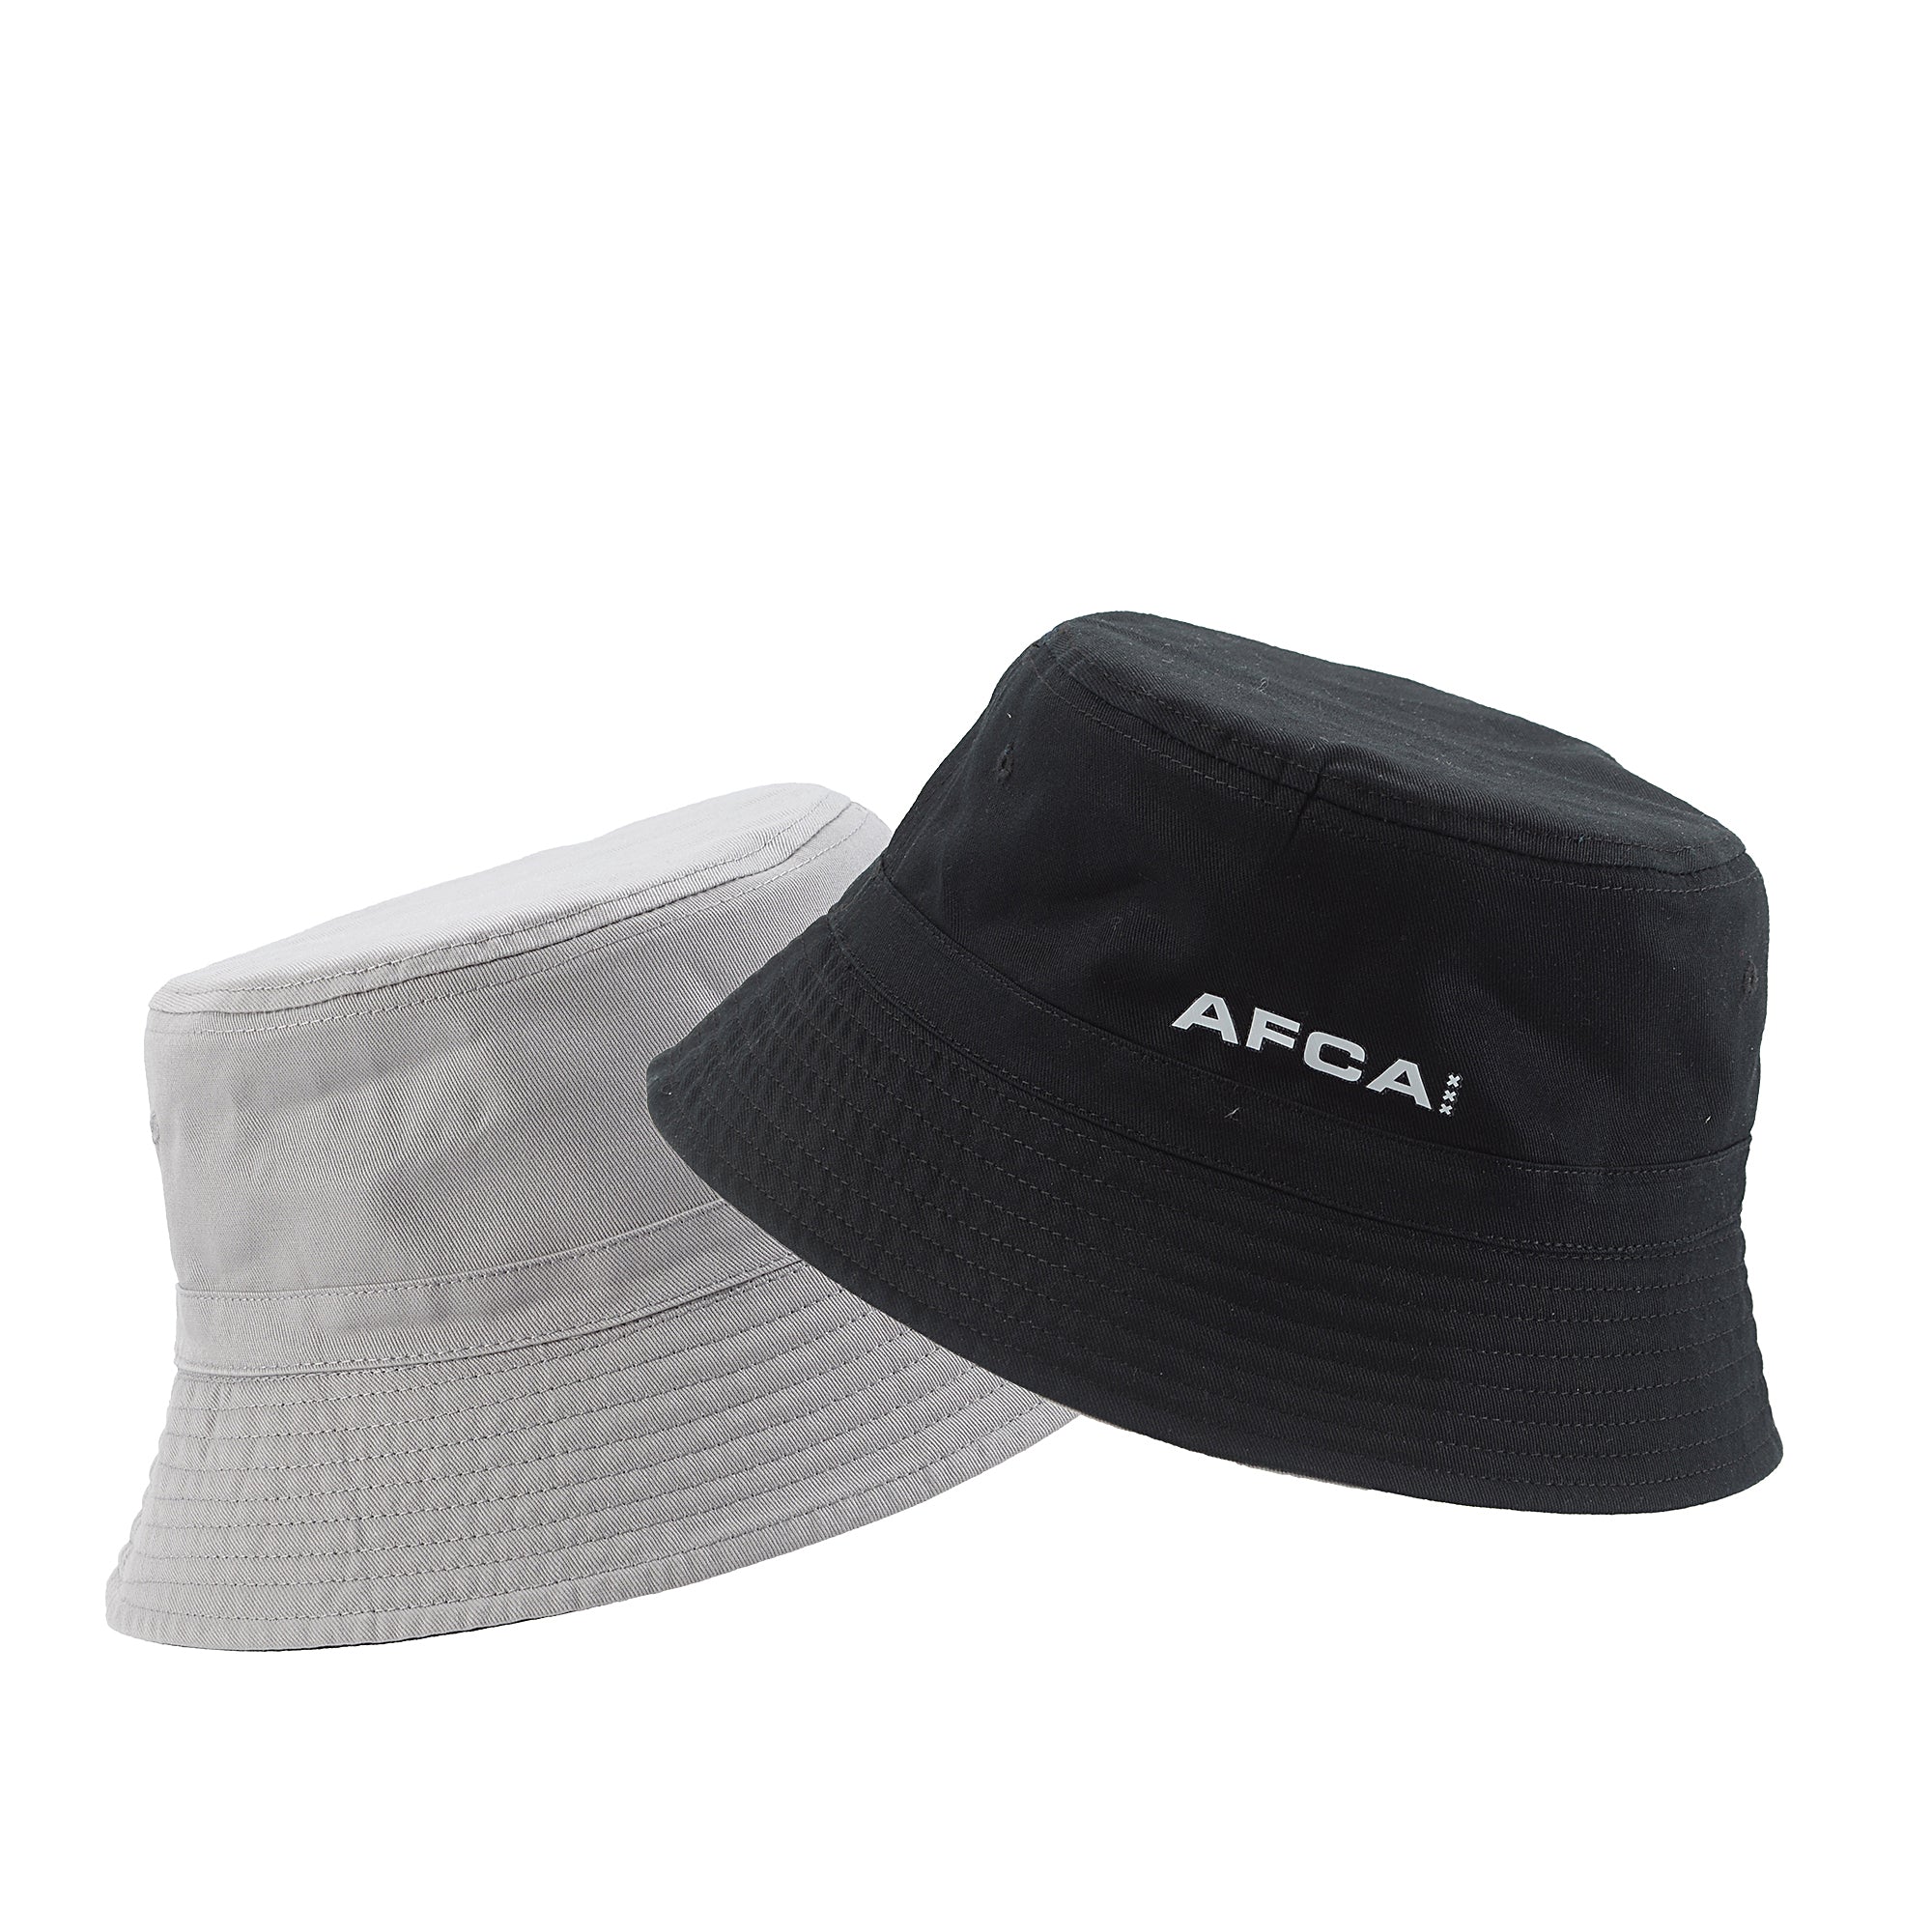 Bucket hat AFCA zwart-wit bal logo